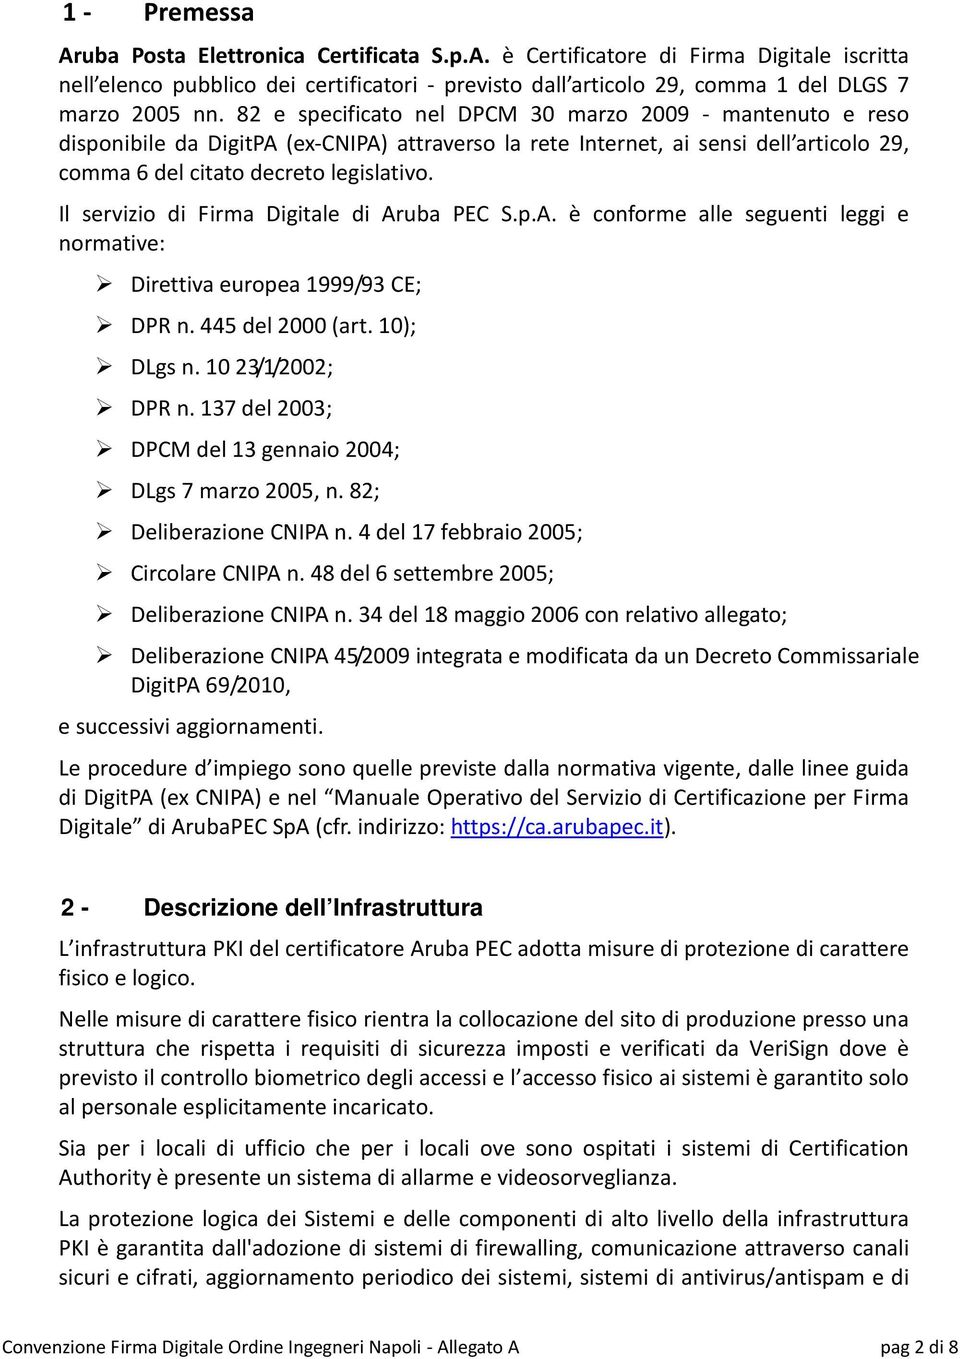 Il servizio di Firma Digitale di Aruba PEC S.p.A. è conforme alle seguenti leggi e normative: Direttiva europea 1999/93 CE; DPR n. 445 del 2000 (art. 10); DLgs n. 10 23/1/2002; DPR n.